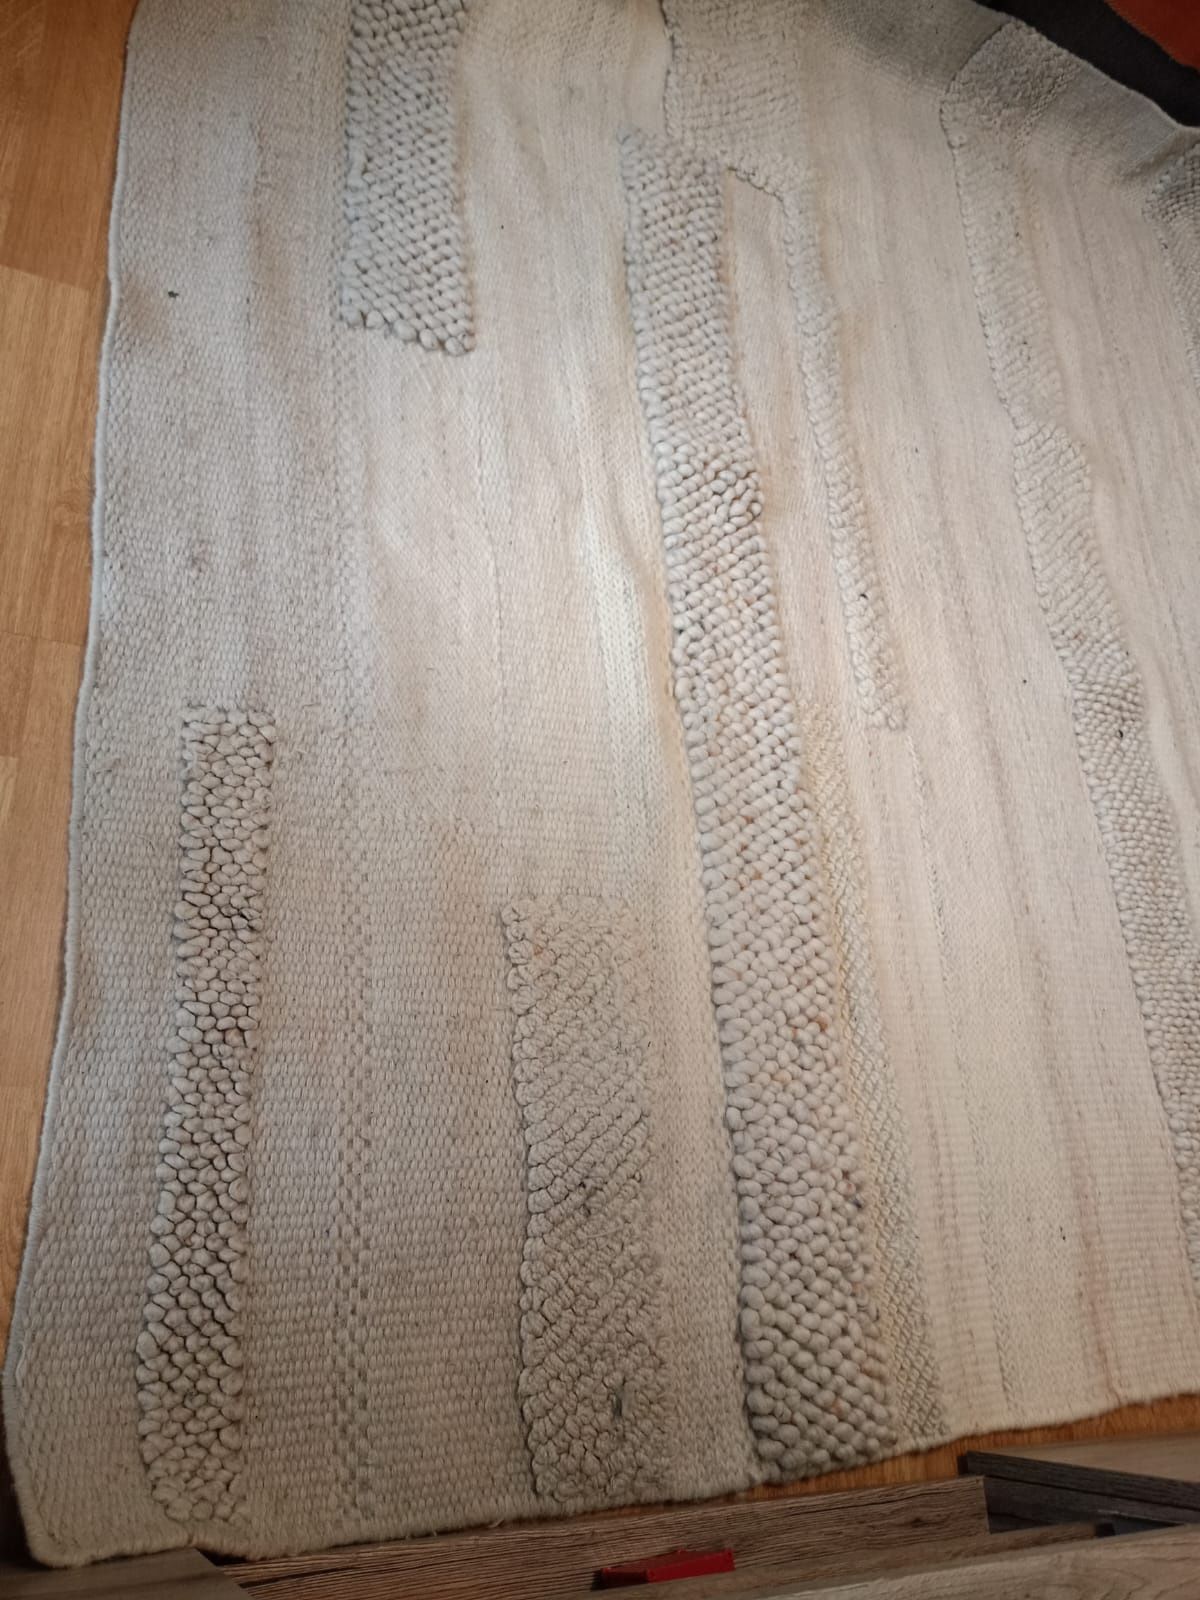 Натуральний килим Ікеа Bronden Ikea 104.805.51 вовняний